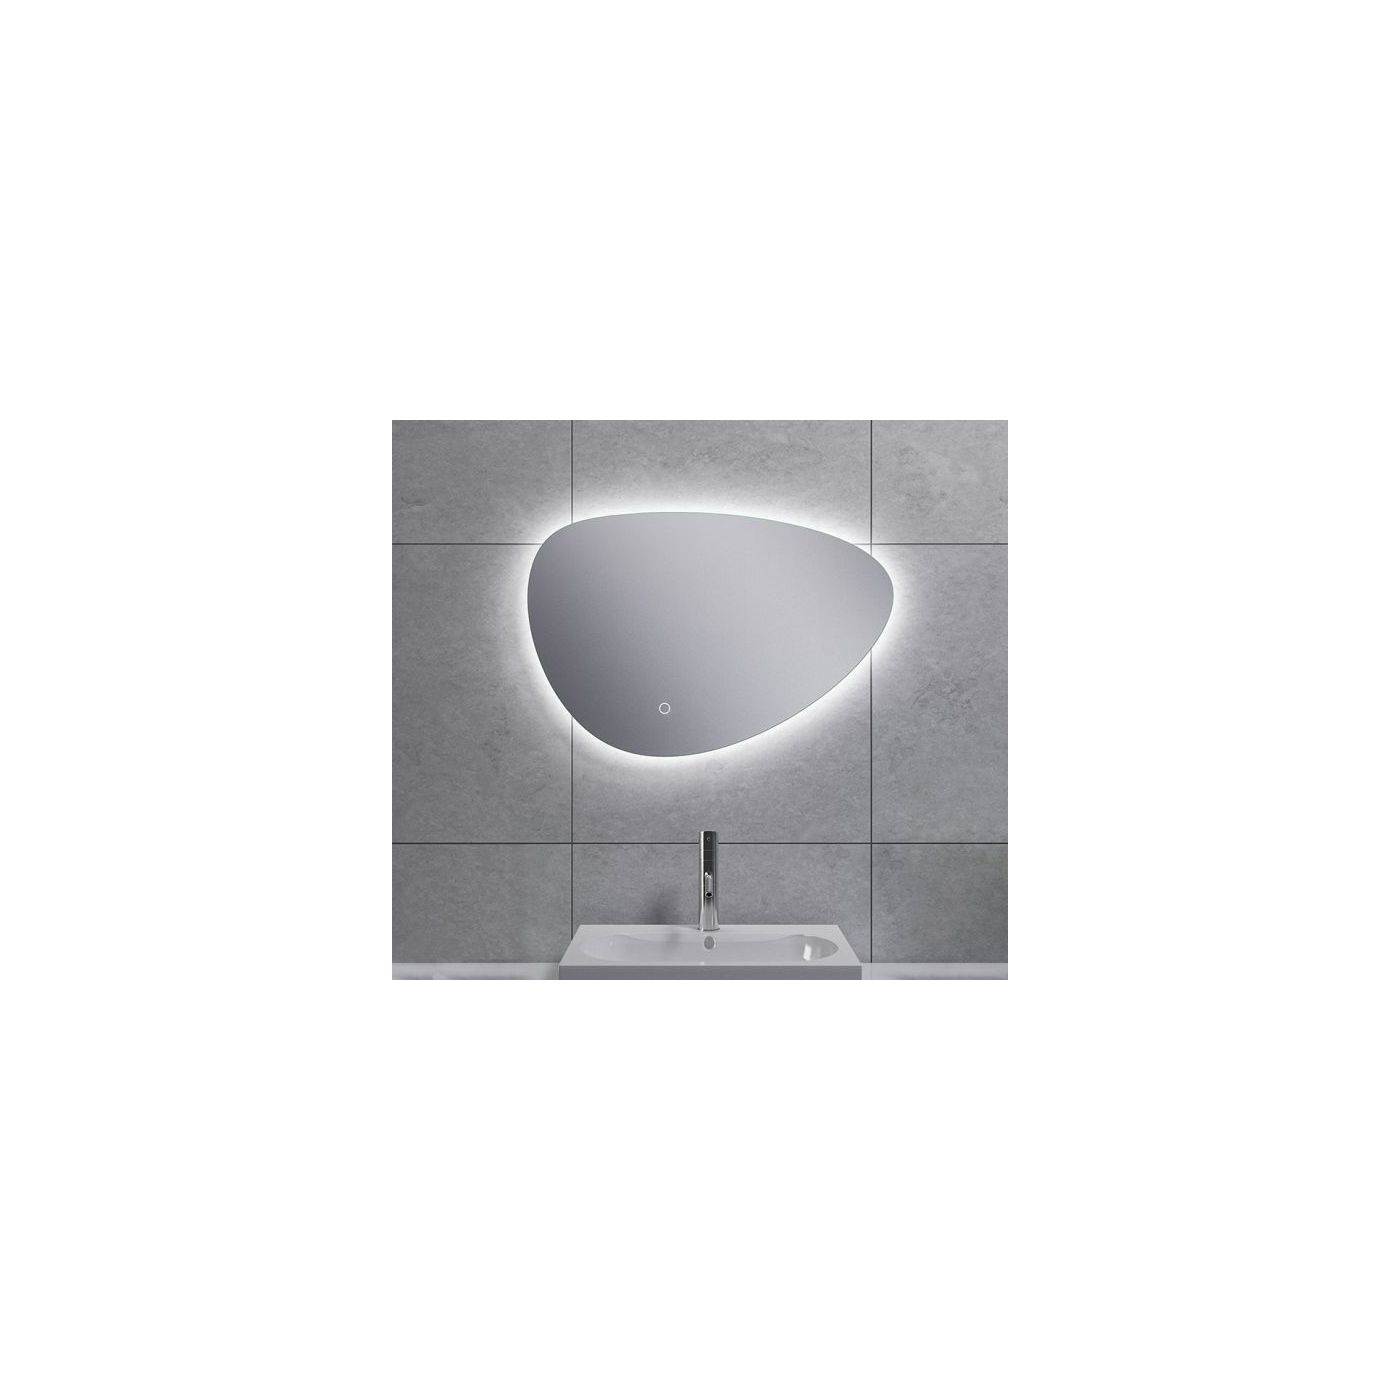 Wiesbaden Uovo spiegel eirond met LED verlichting 60x41 cm chroom